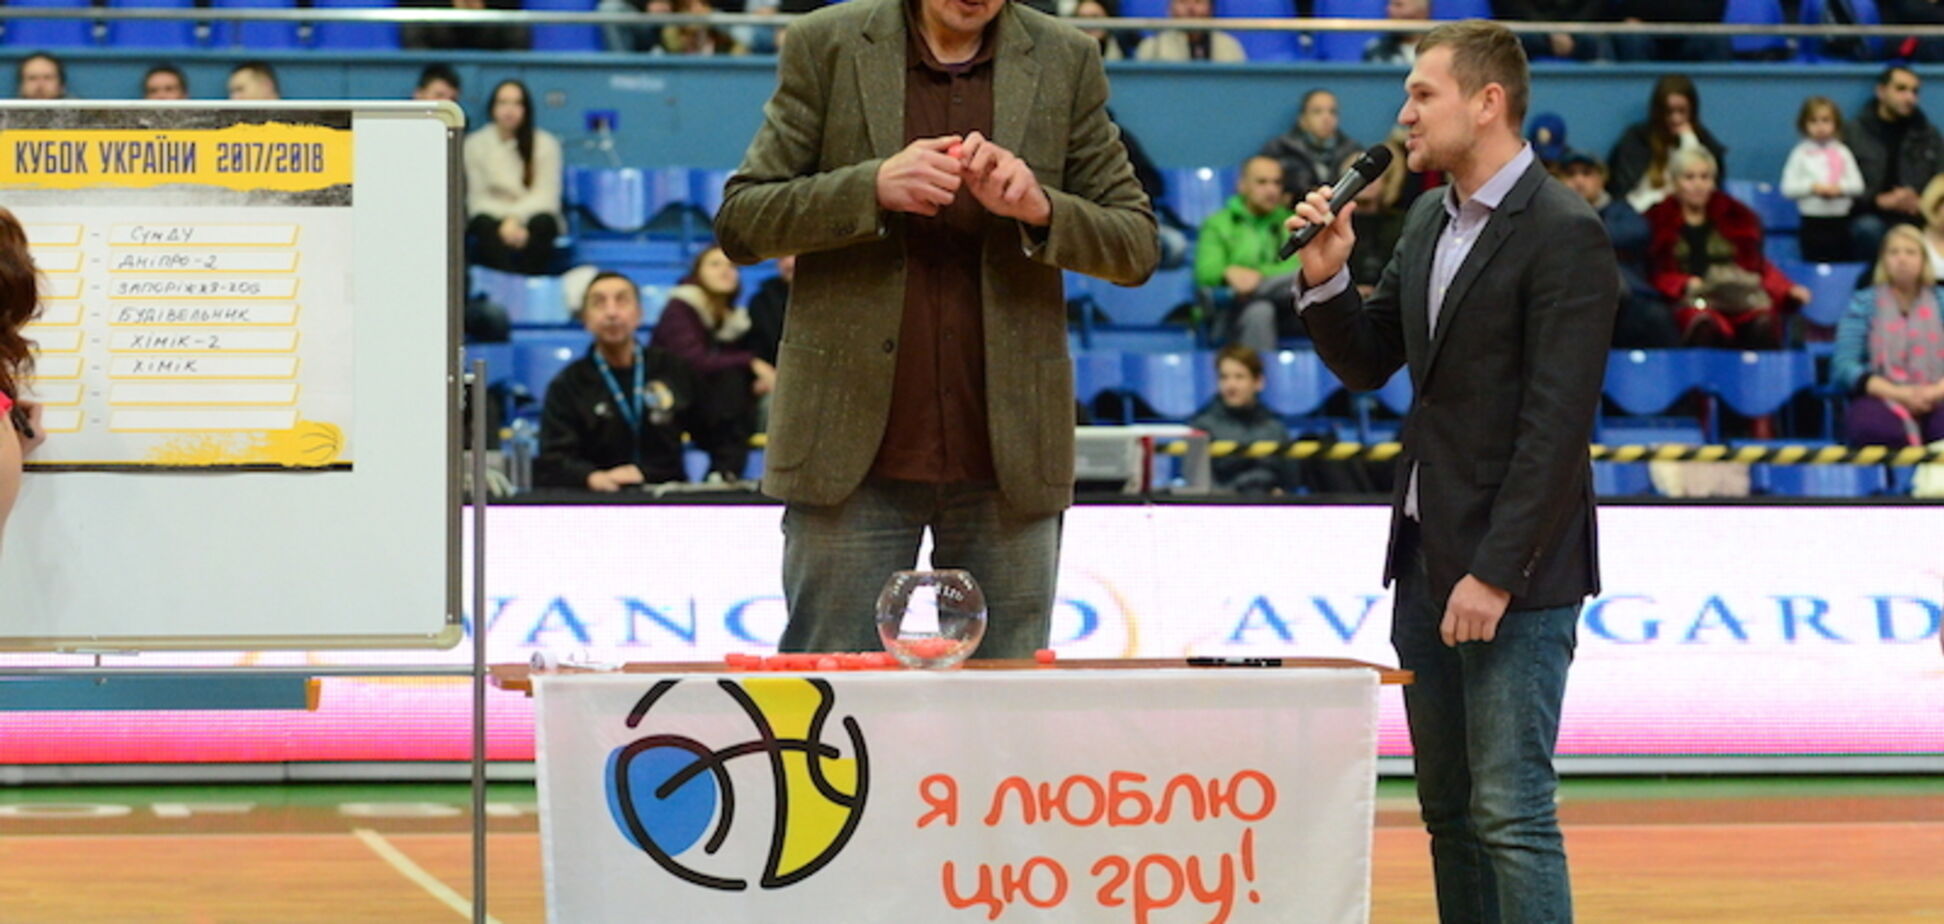 Состоялась жеребьевка 1/8 финала Кубка Украины по баскетболу